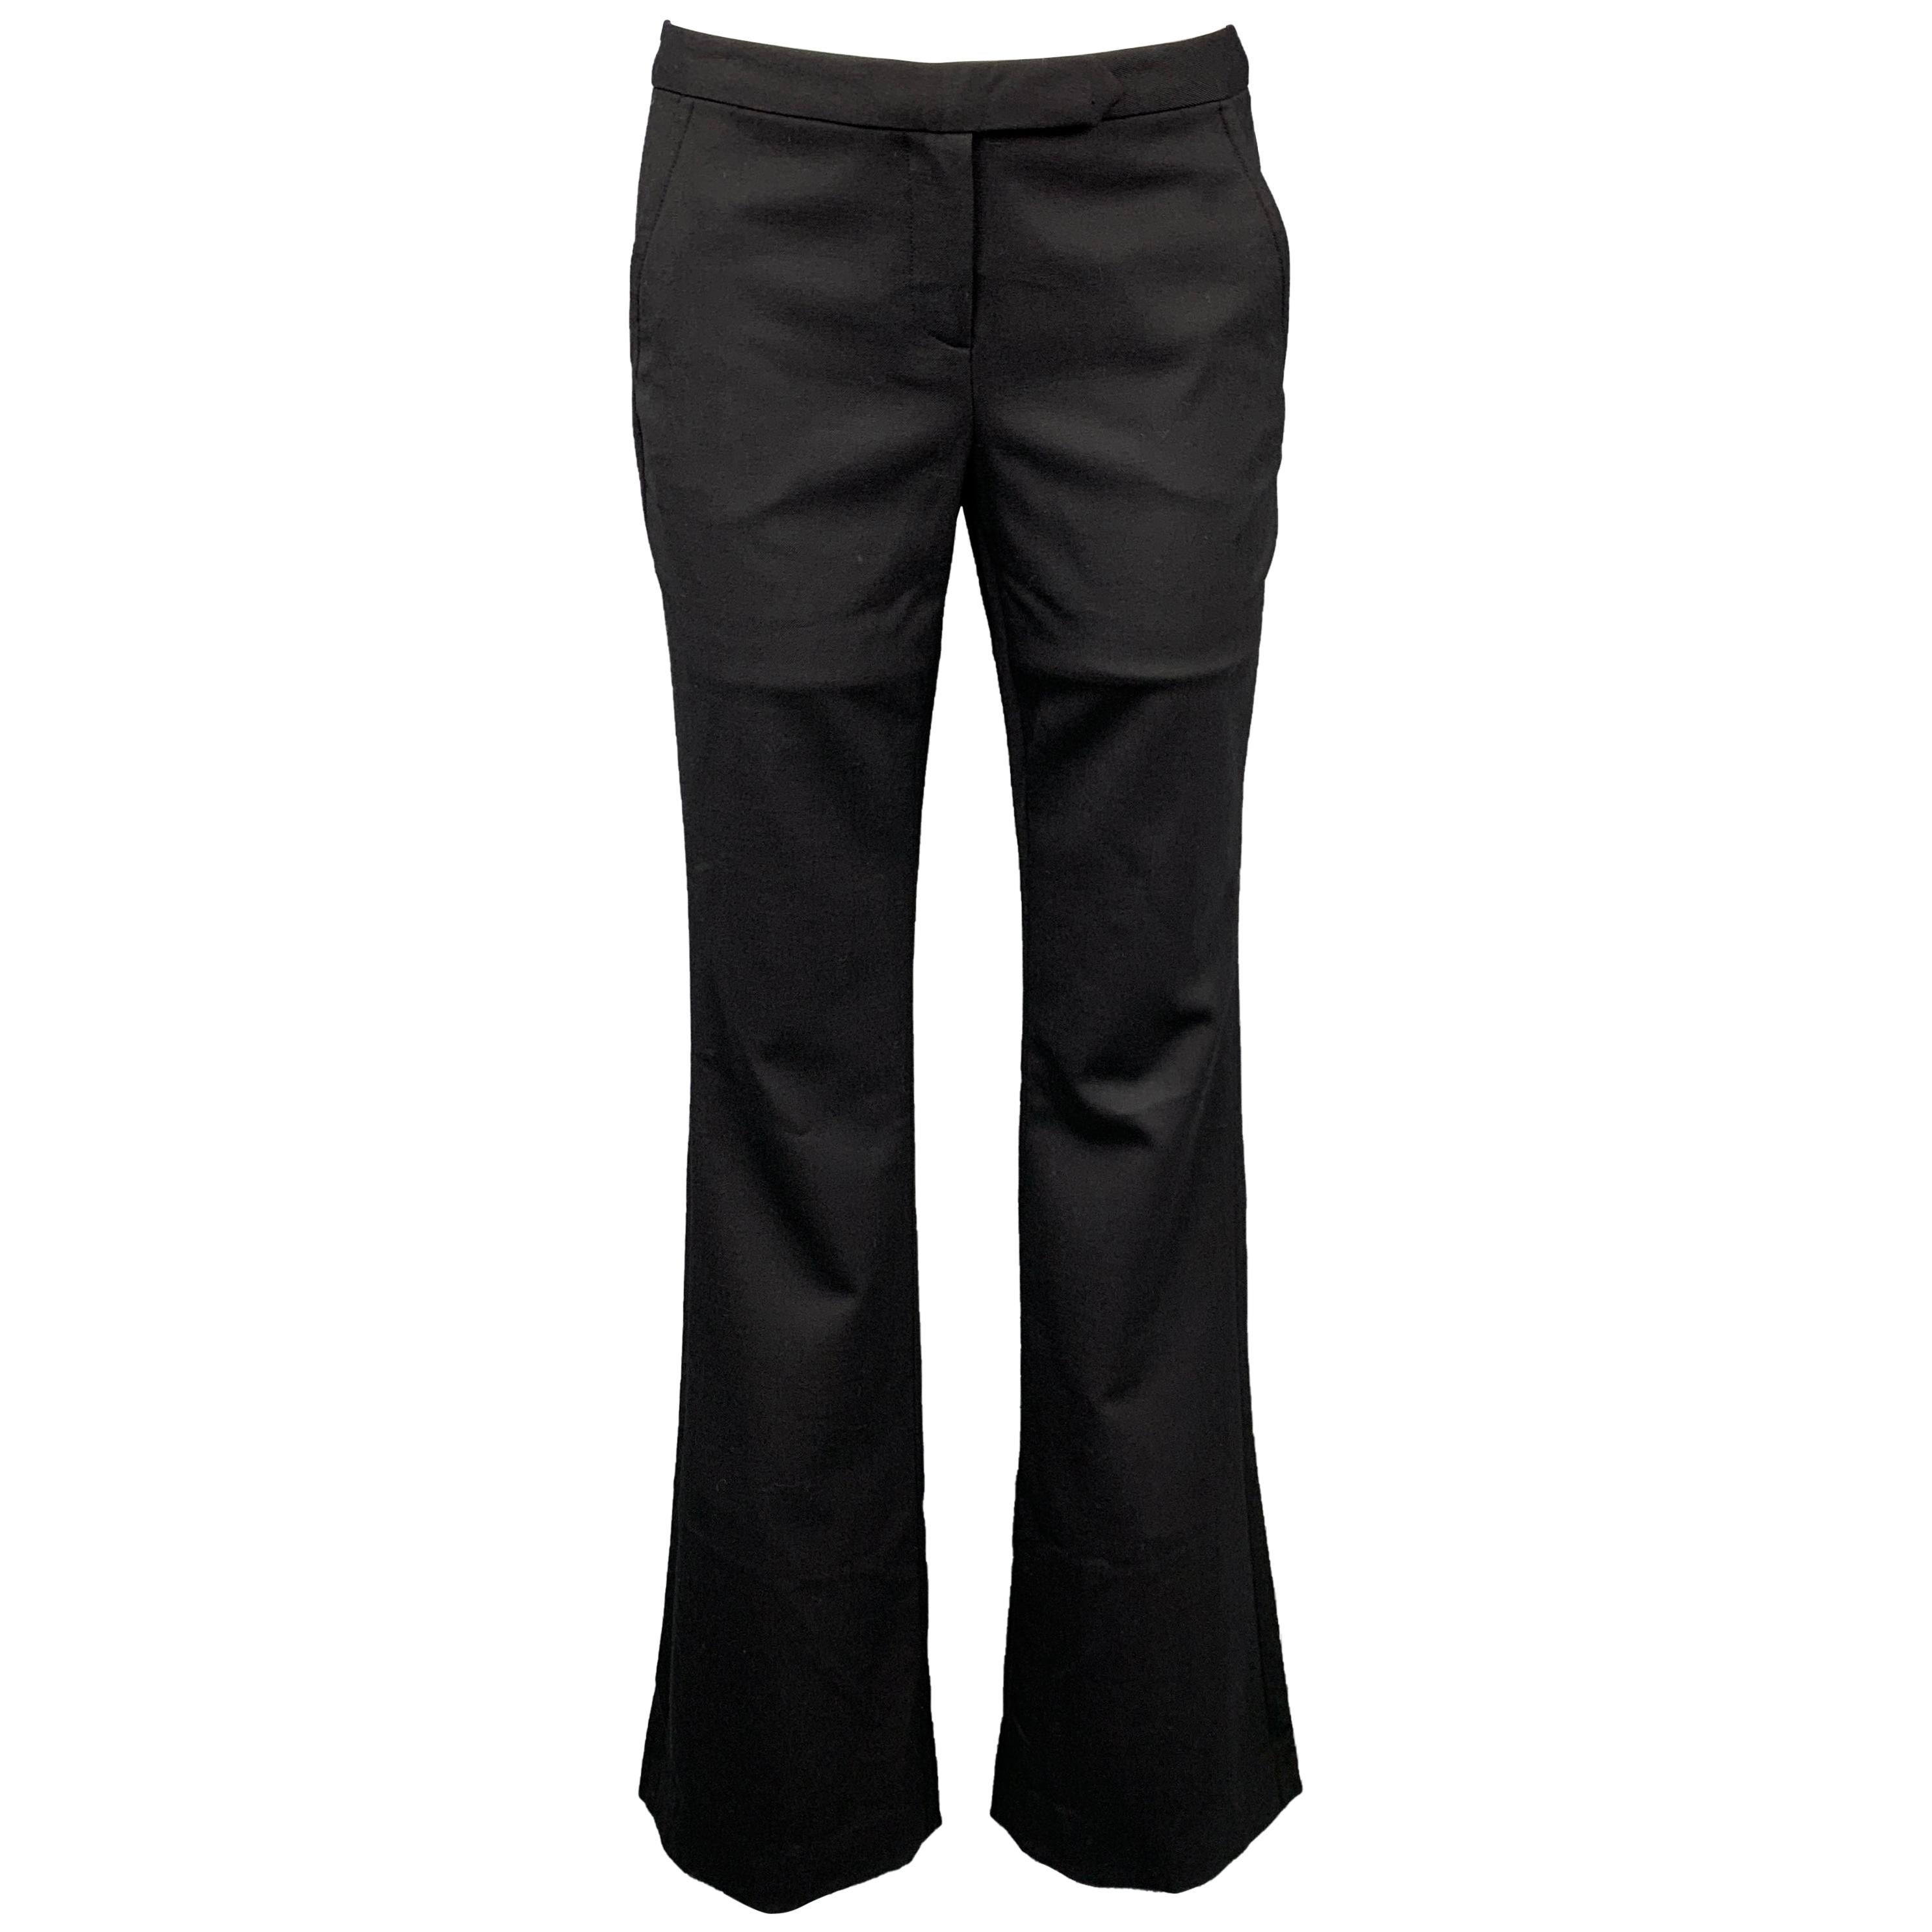 A.L.C. Size 6 Black Wool Blend Dress Pants